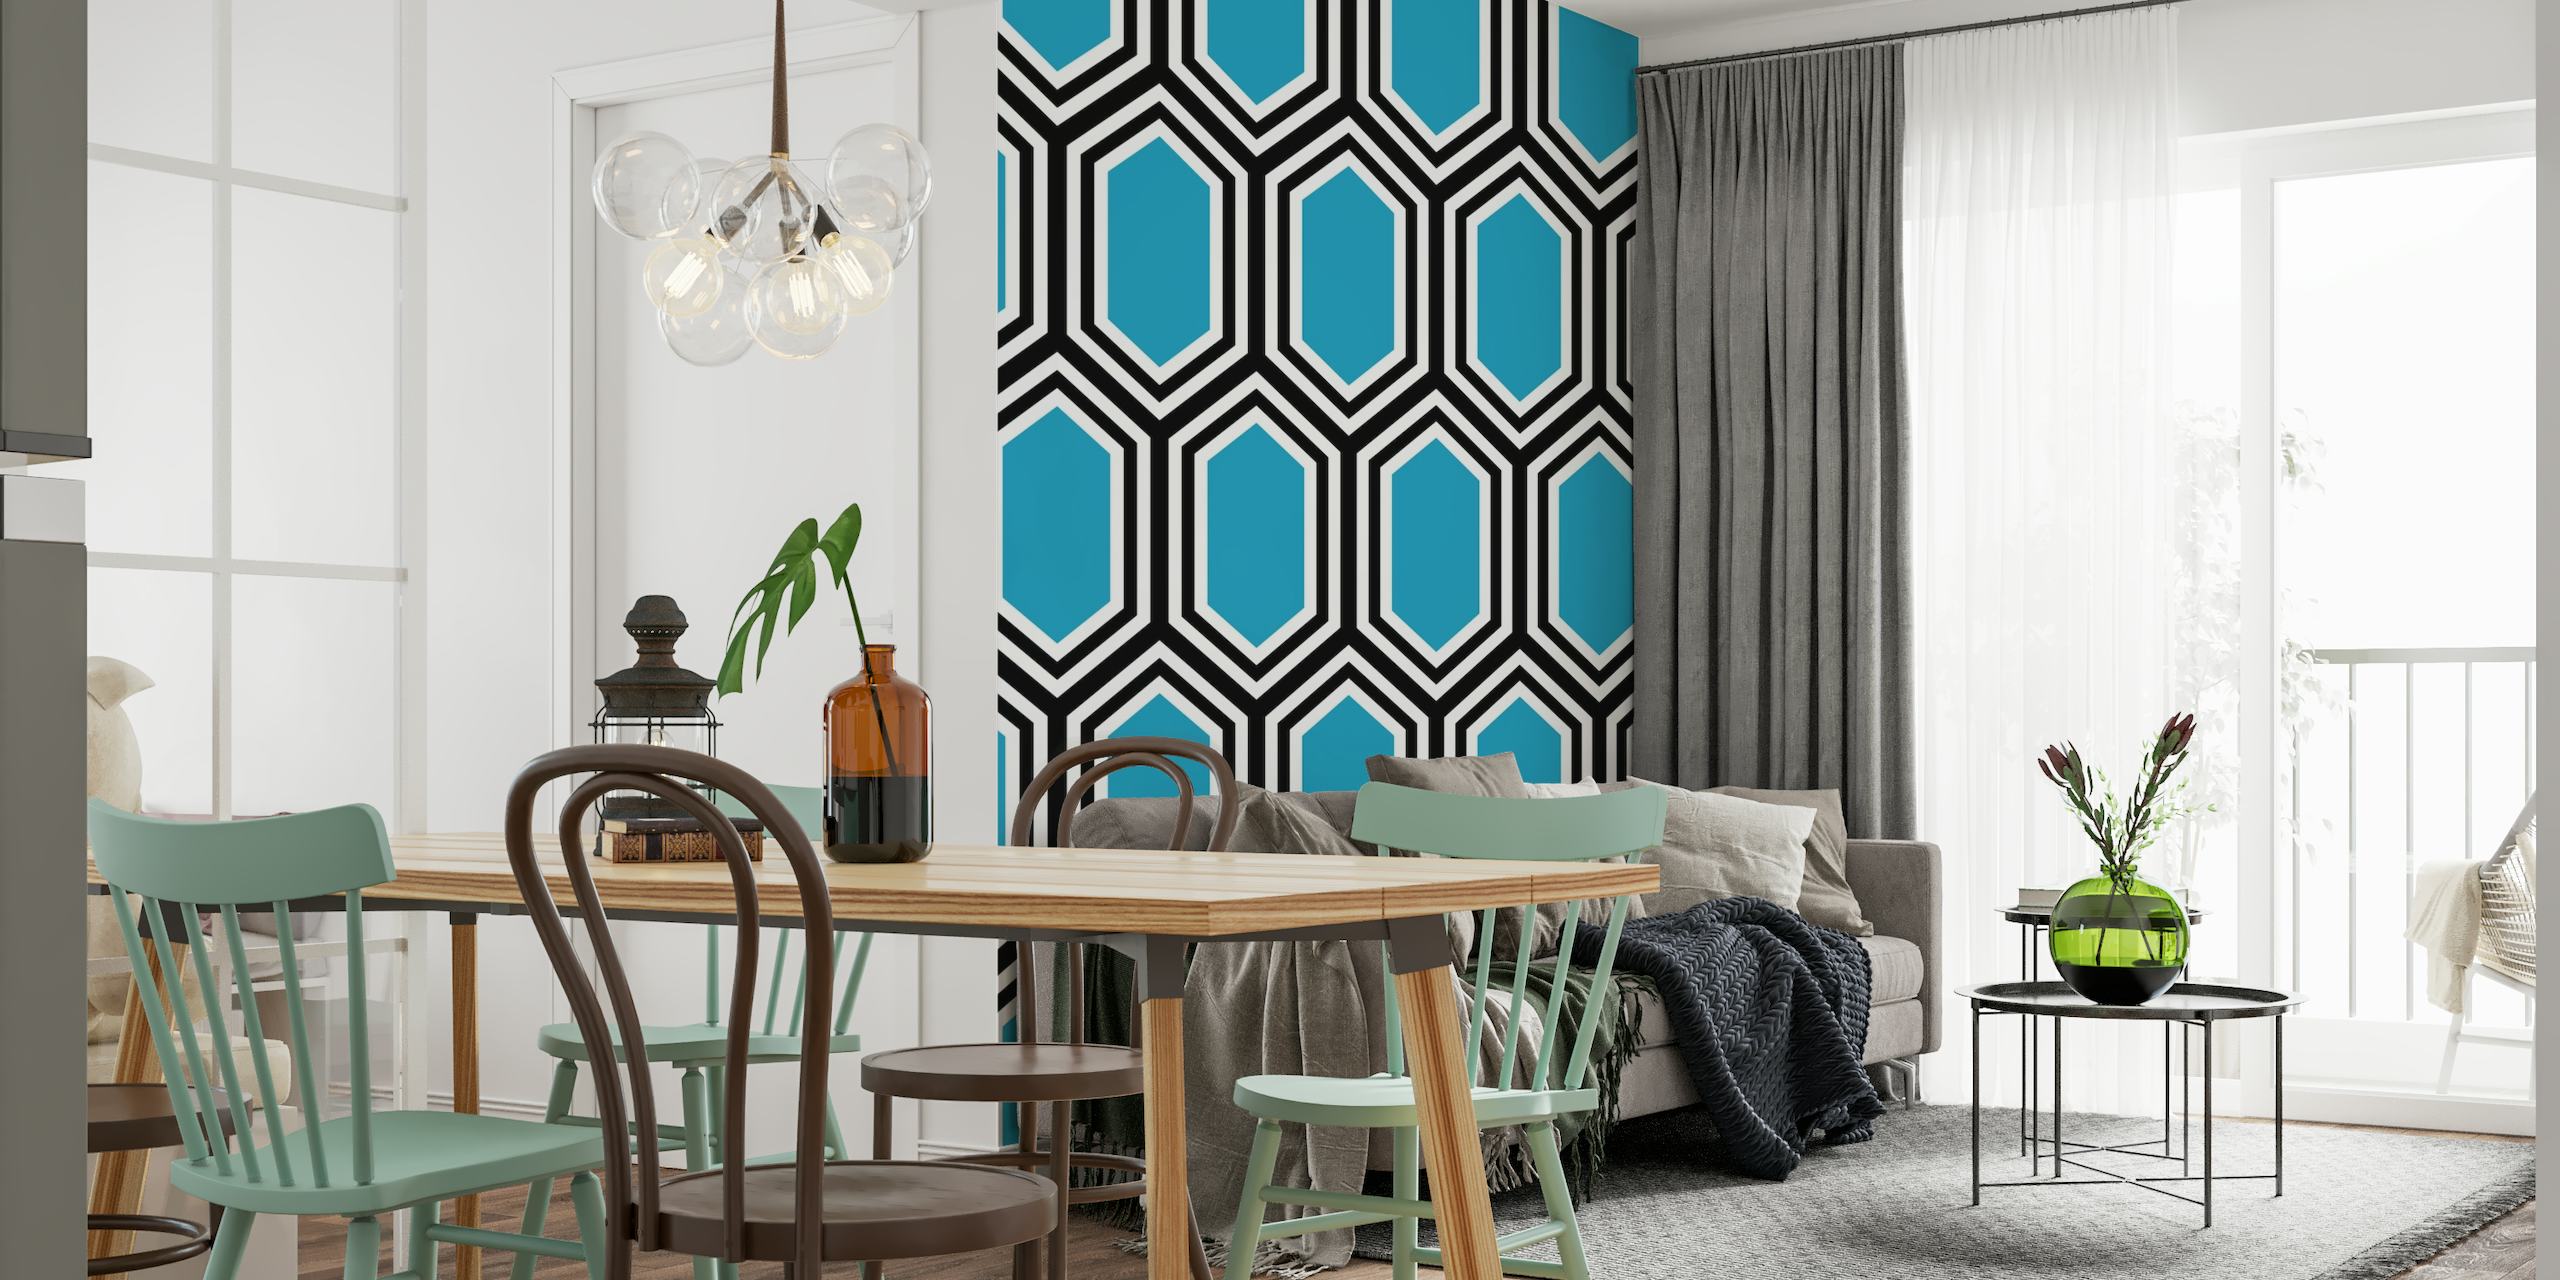 Turquoise geometric behang